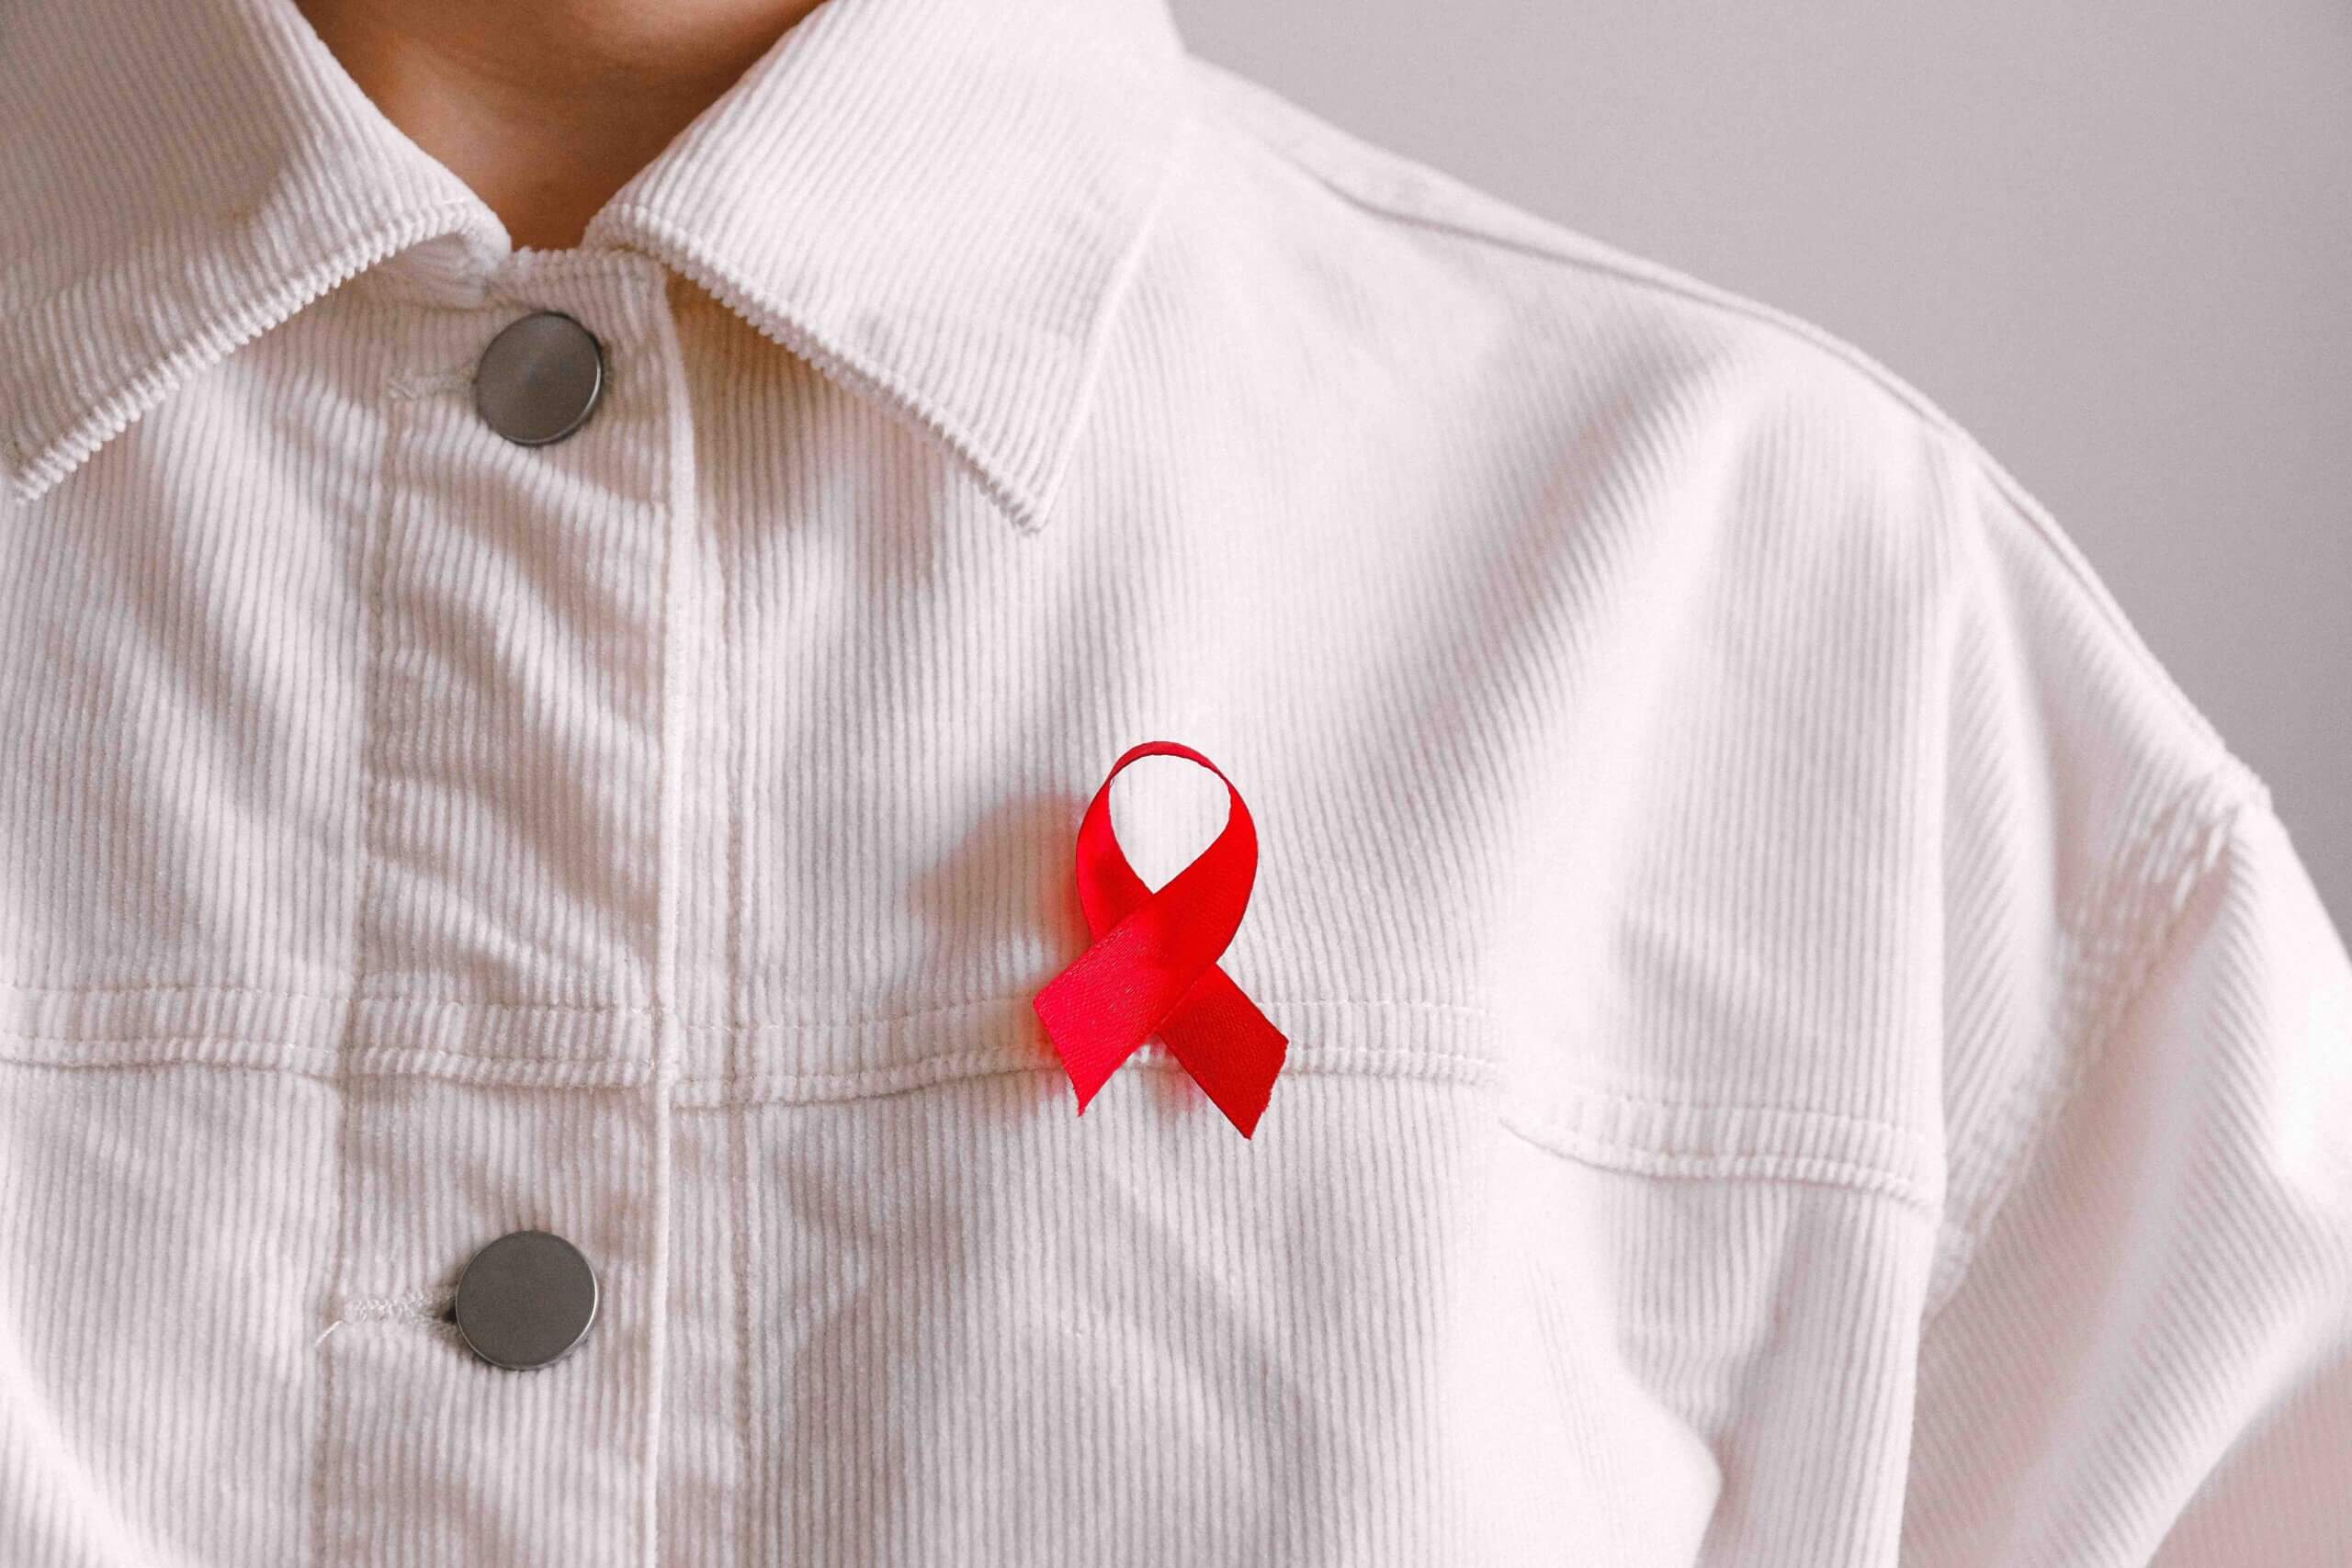 Am 1. Dezember ist Welt-Aids-Tag: Setze dich für HIV-positive Menschen ein